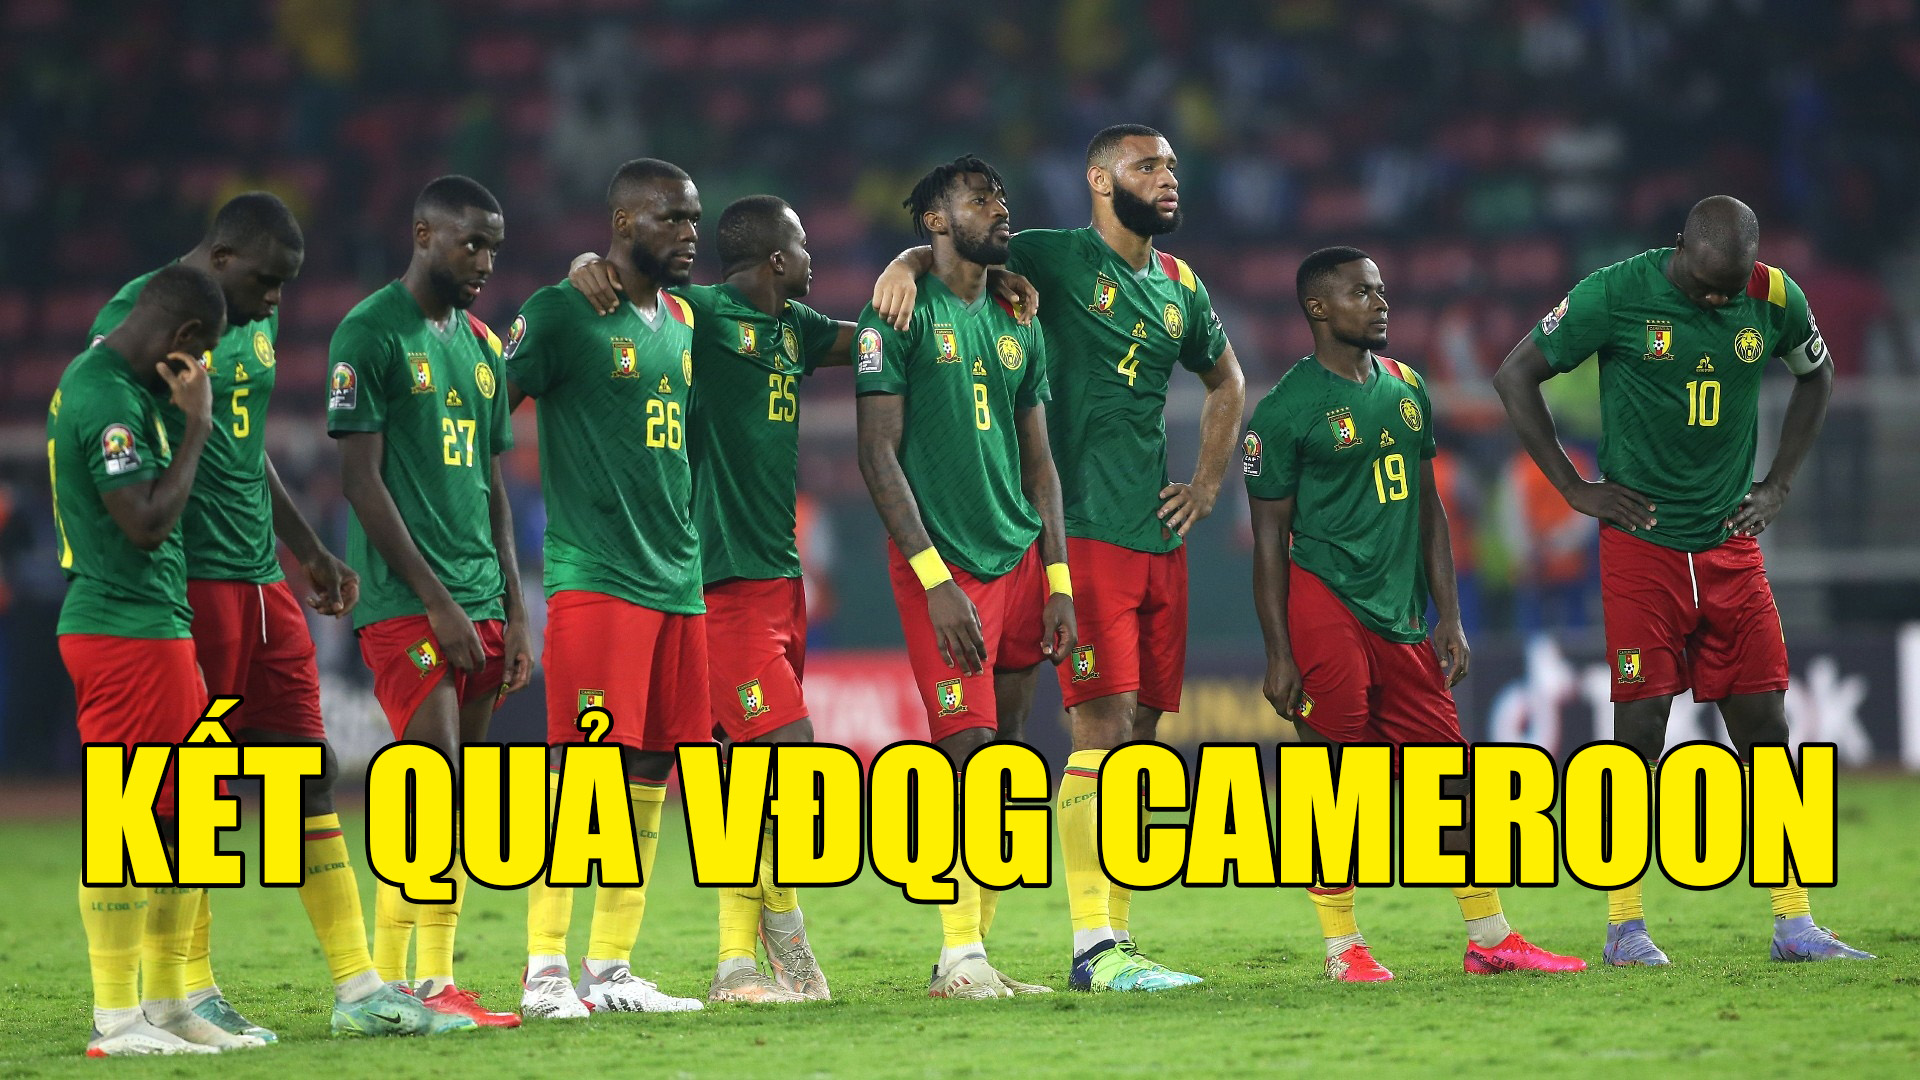 KQ Cameroon - Kết quả VĐQG Cameroon mới nhất ngày hôm nay